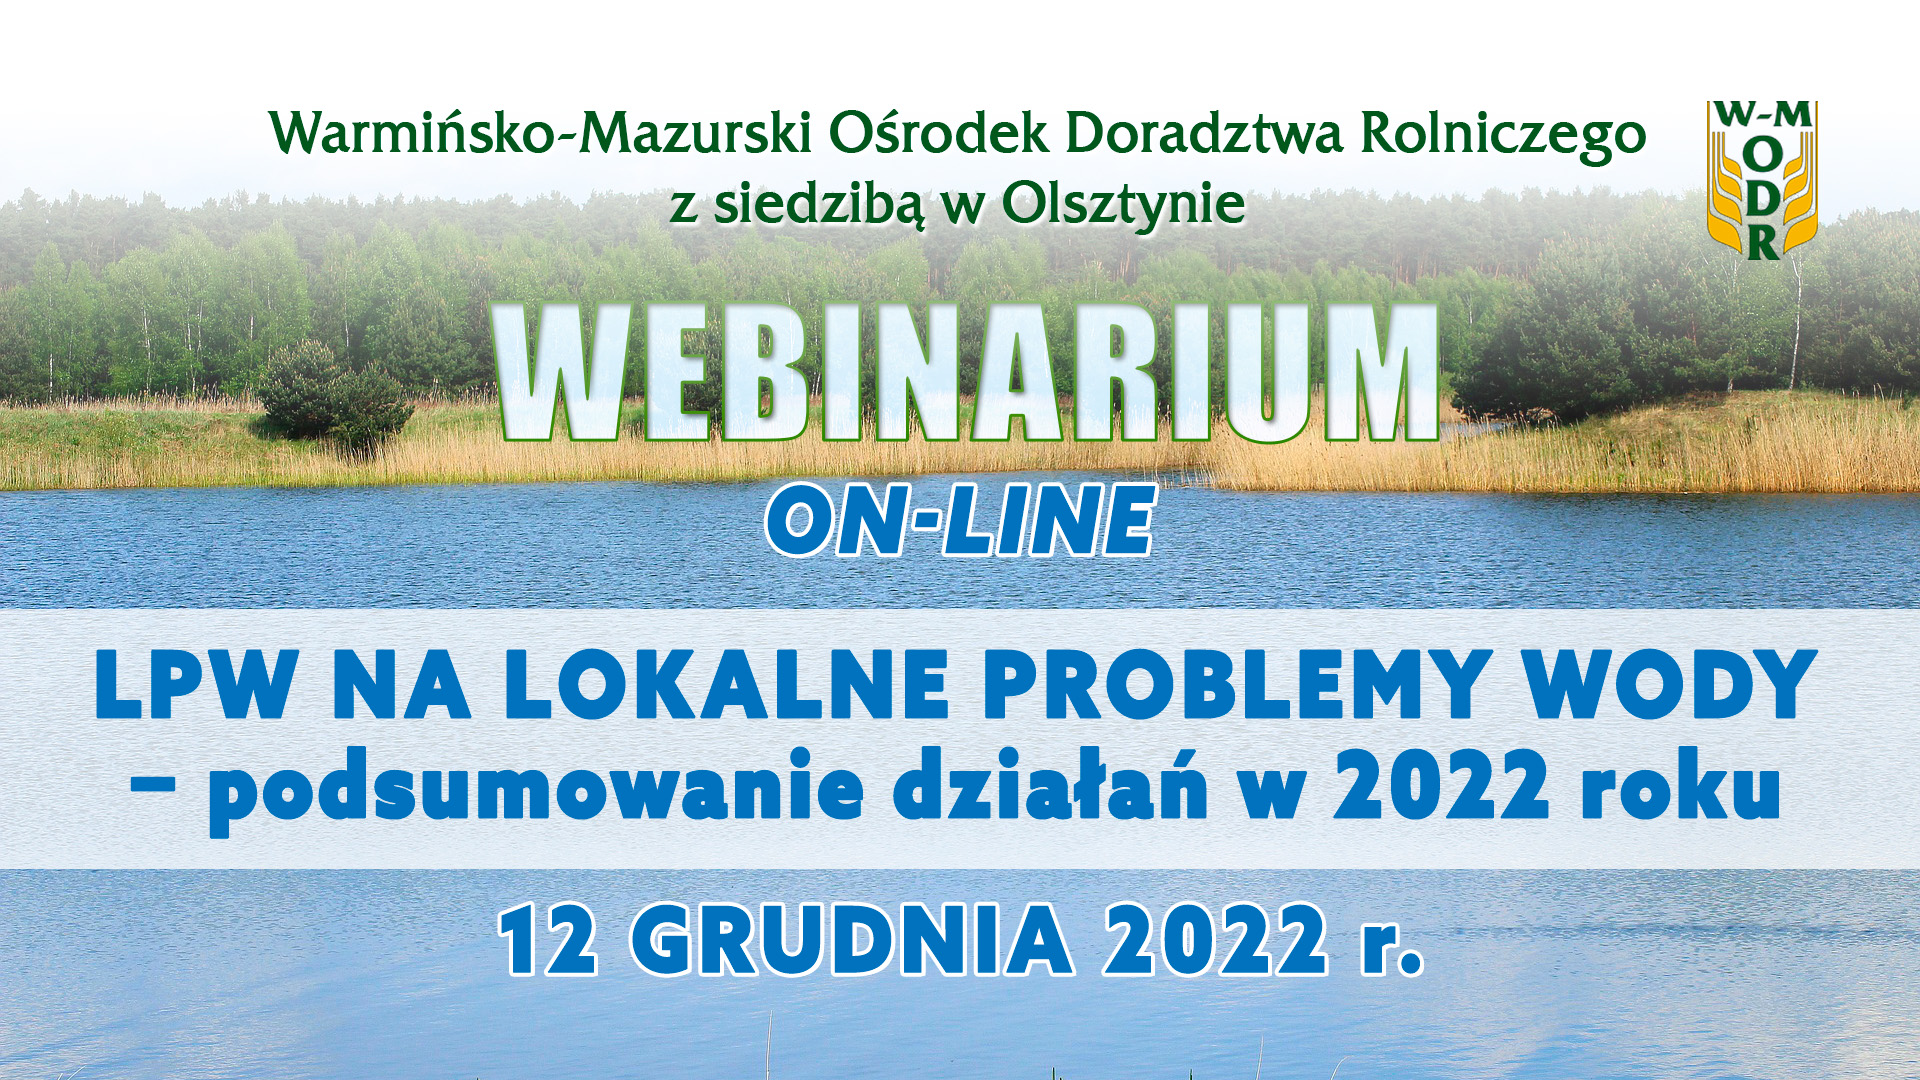 Webinarium "LPW na Lokalne Problemy Wody - podsumowanie działań w 2022 roku" - 12 grudnia 2022 r.